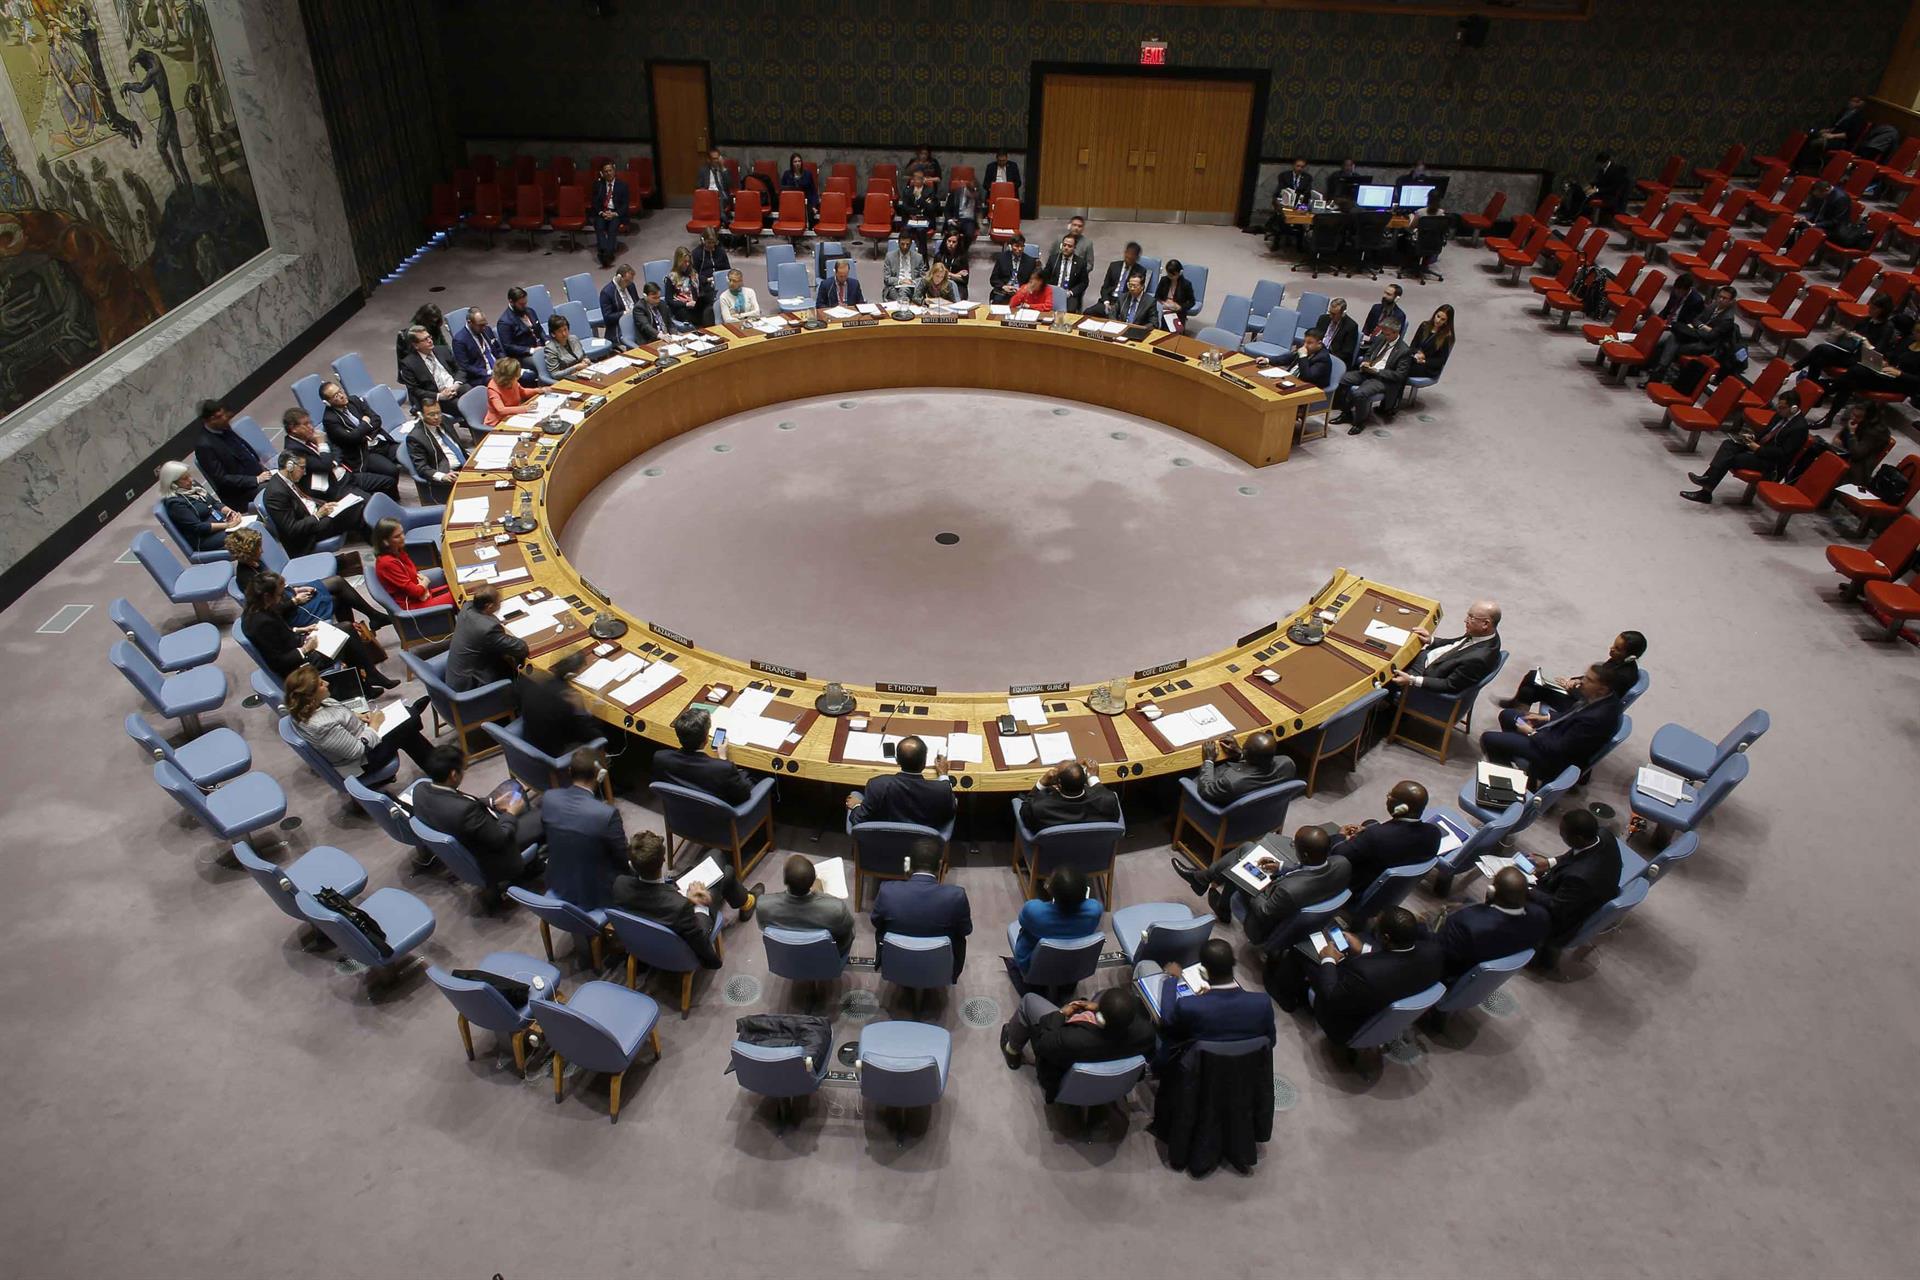 Vista general del pleno del Consejo de Seguridad de la ONU, en una fotografía de archivo. EFE/Kena Betancur